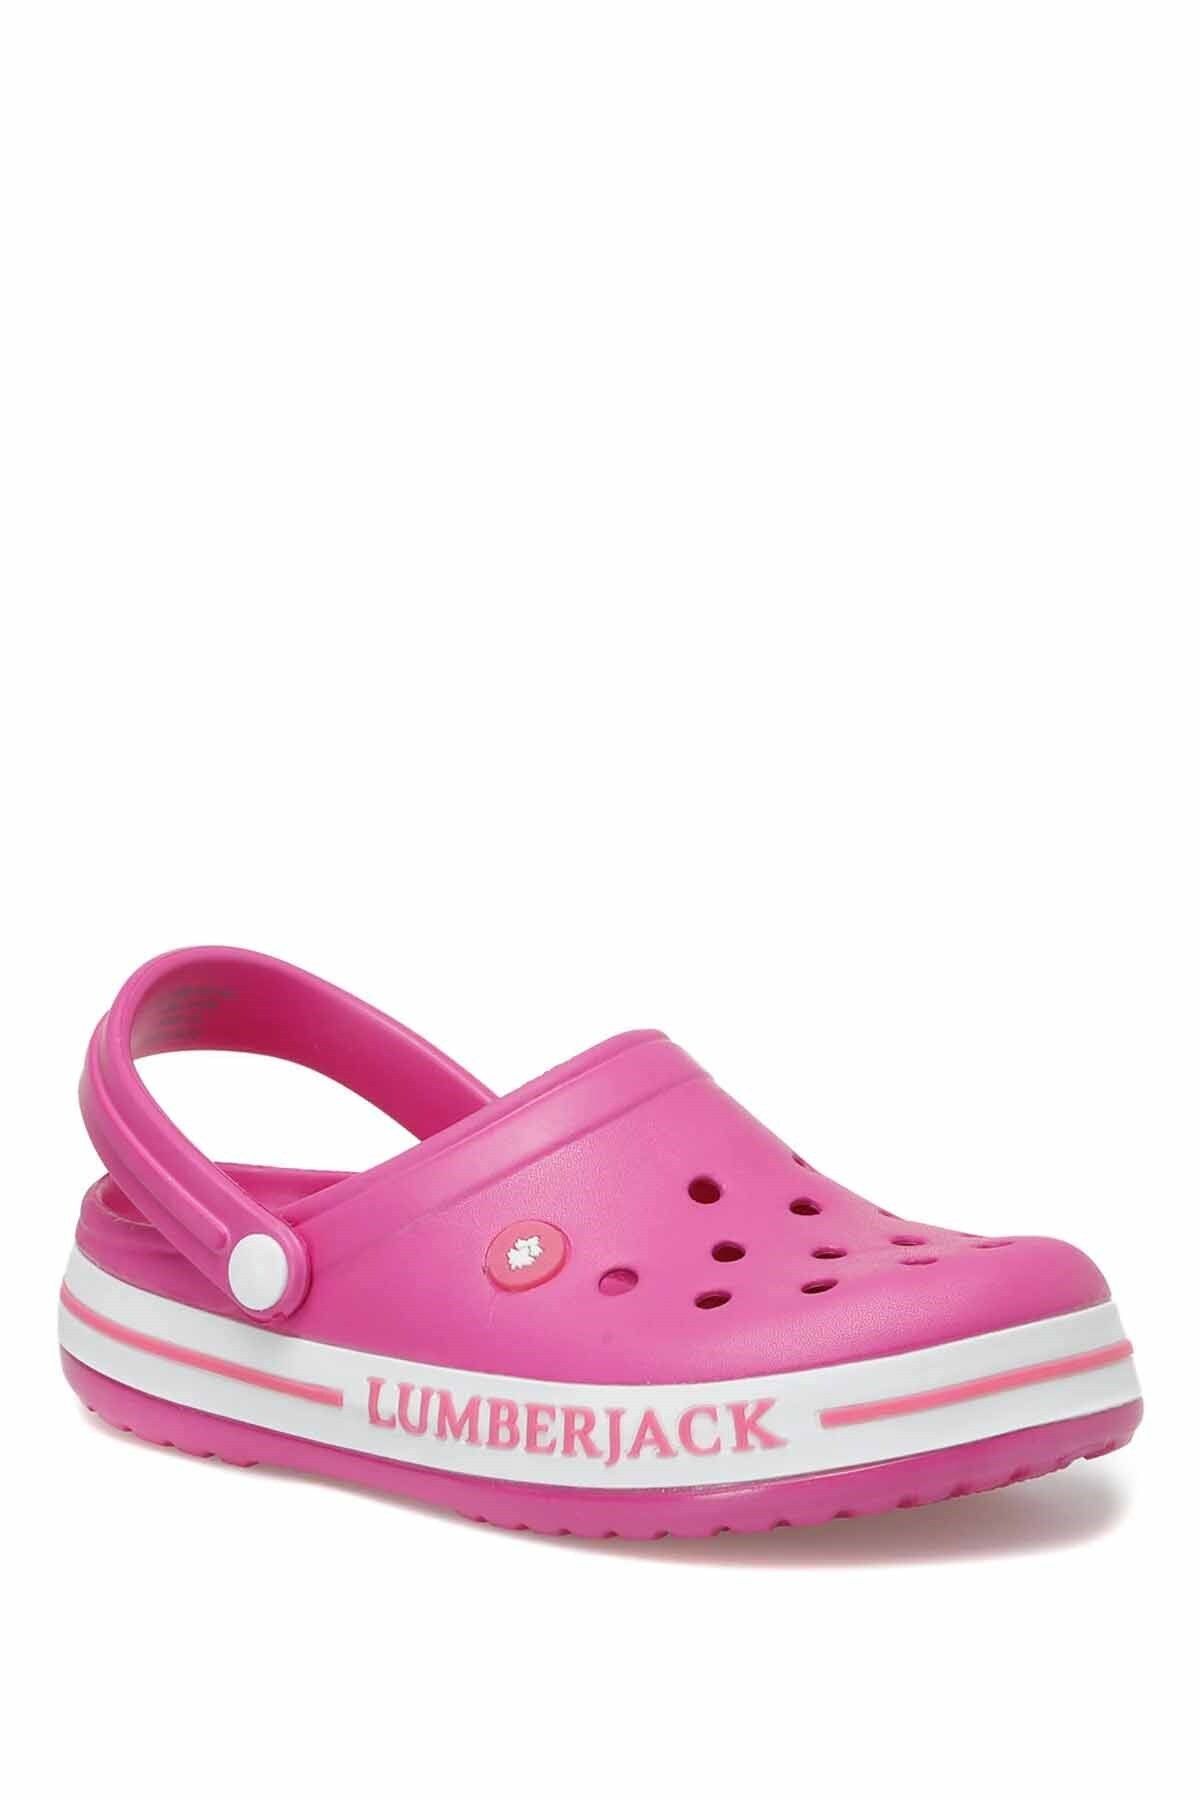 Lumberjack Lumberkack Crocs Devon Kadın Terlik Ayakkabı 101153625fuşya